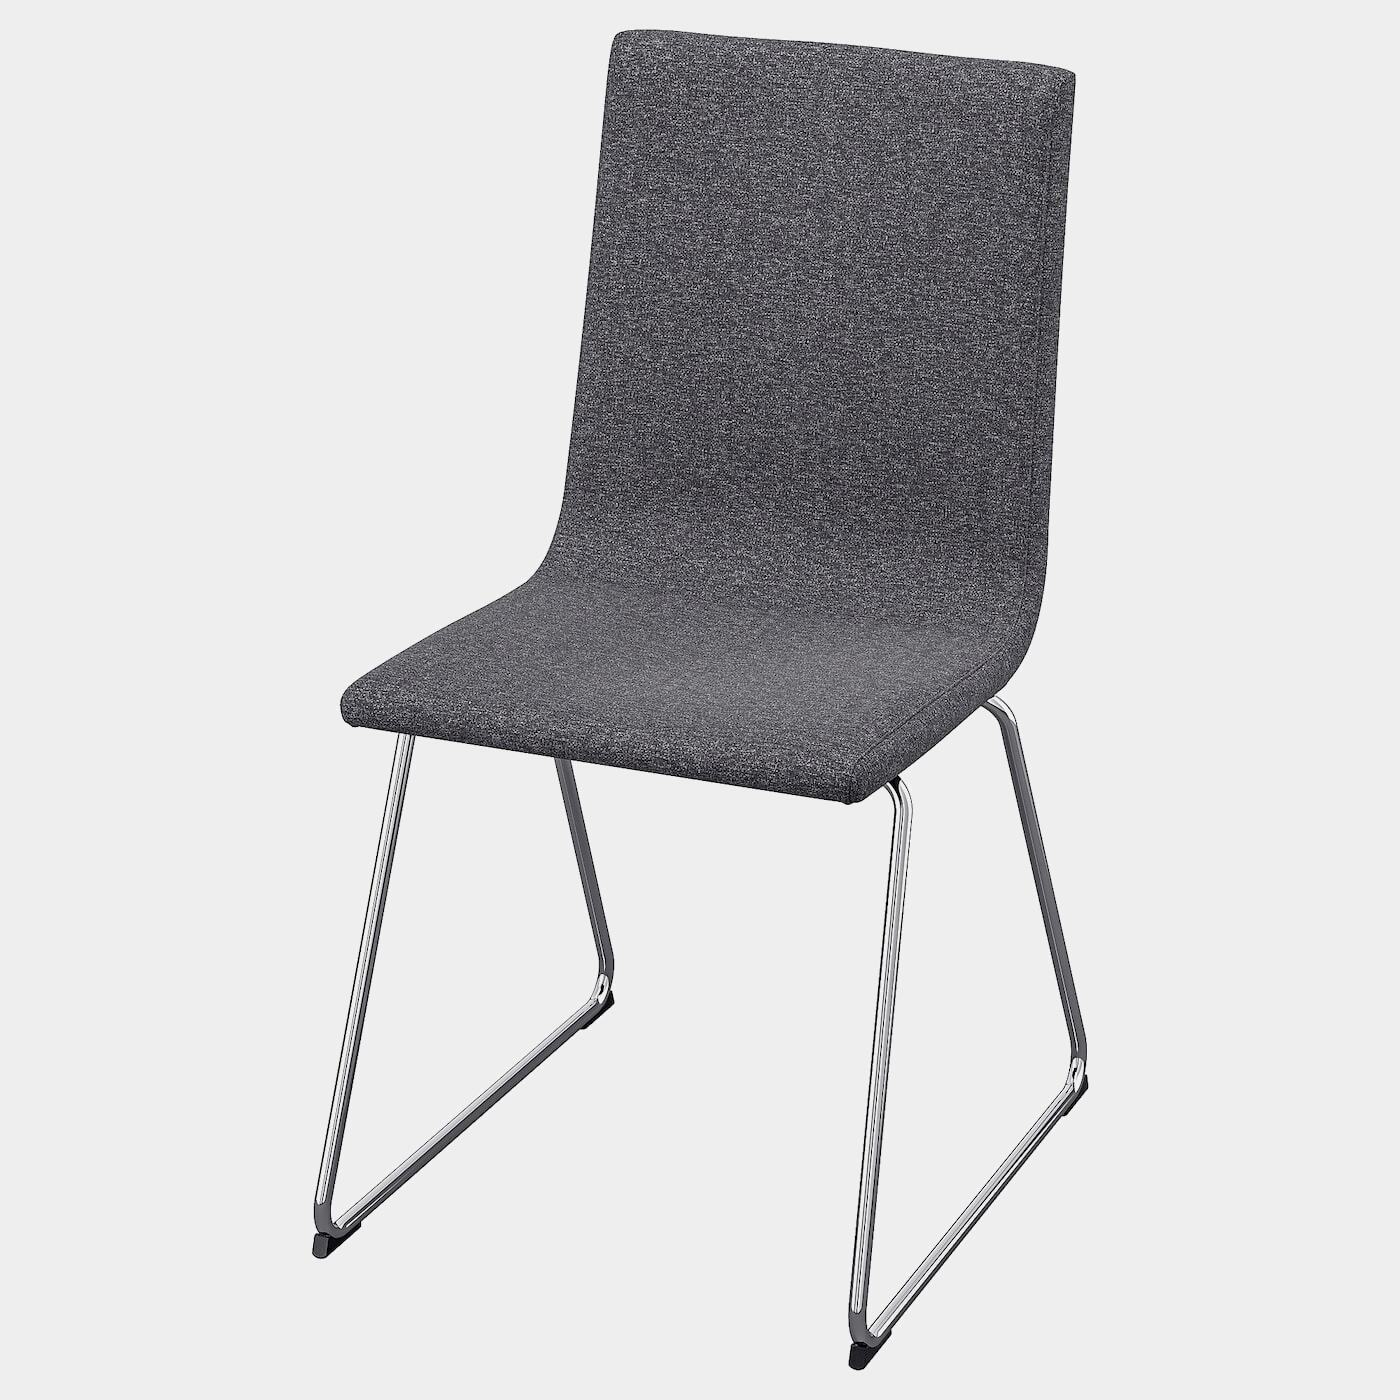 VOLFGANG Stuhl  - Esszimmerstühle - Möbel Ideen für dein Zuhause von Home Trends. Möbel Trends von Social Media Influencer für dein Skandi Zuhause.